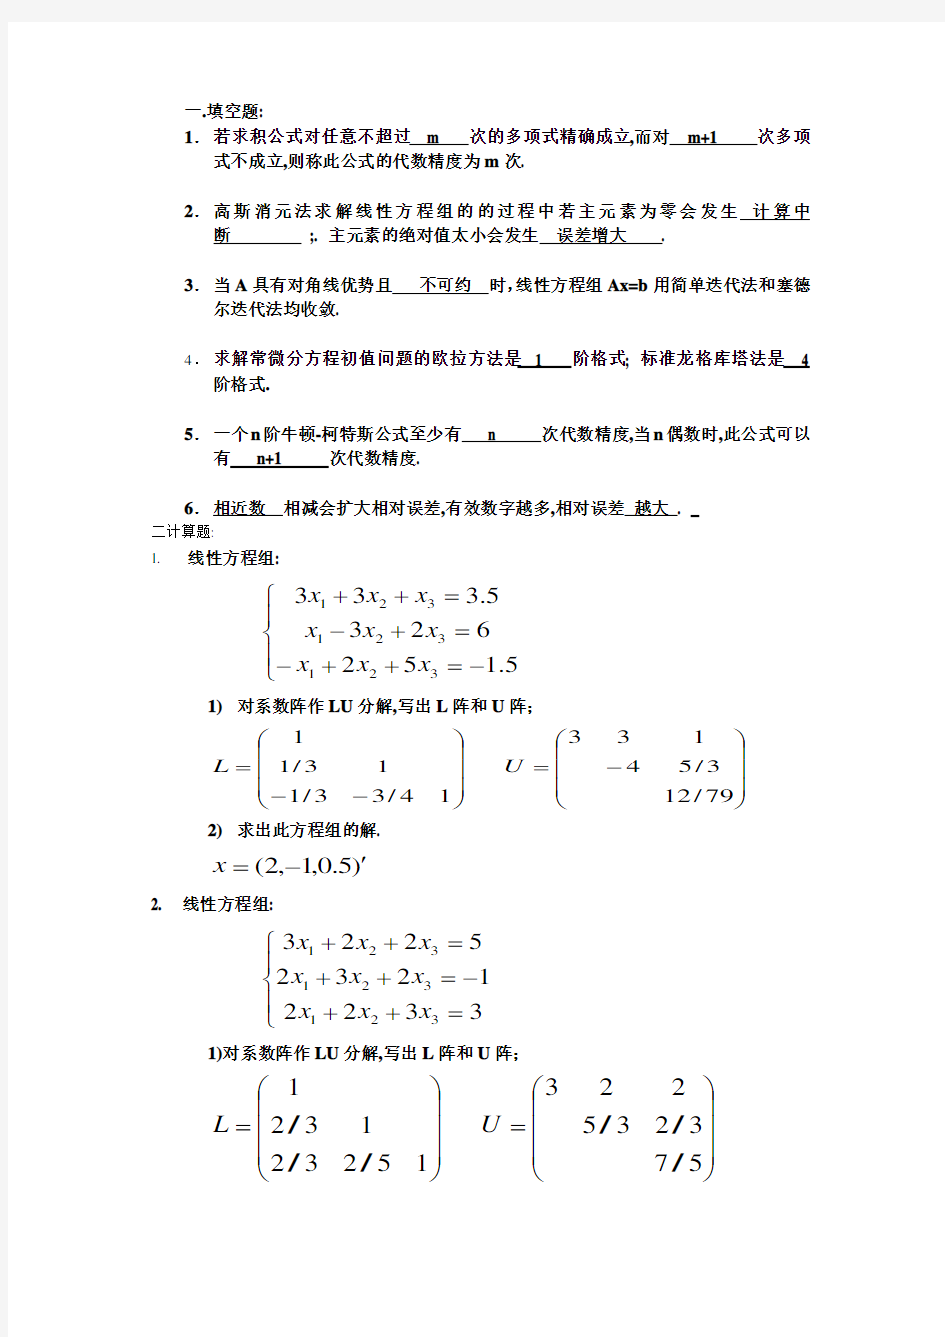 重庆大学《数值分析》期末考试真题及答案